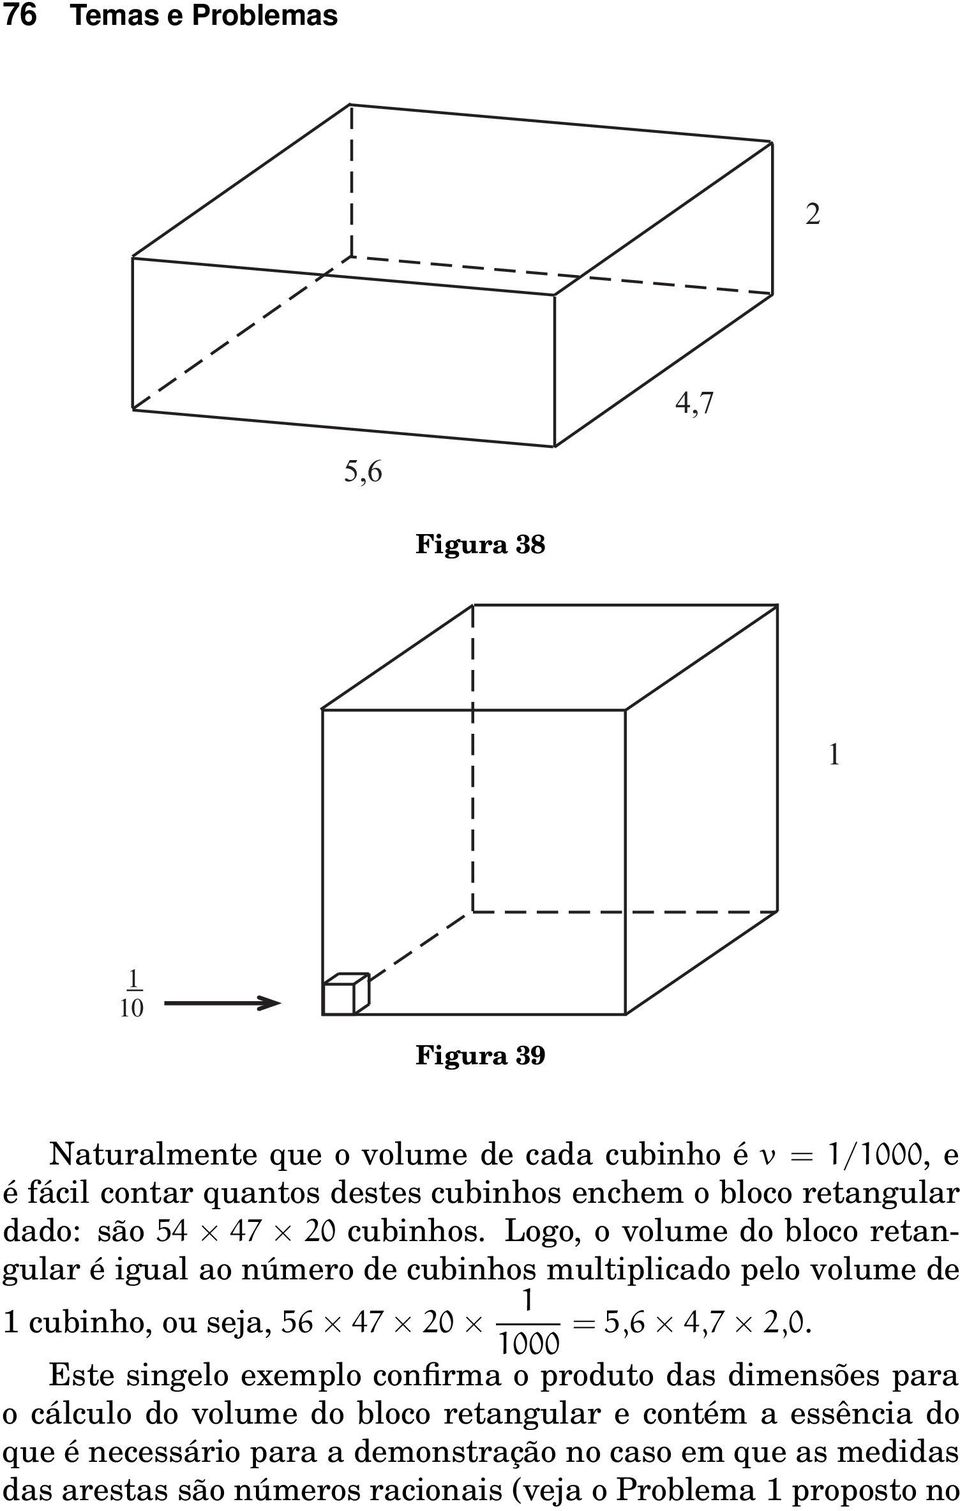 Logo, o volume do bloco retangular é igual ao número de cubinhos multiplicado pelo volume de 1 cubinho, ou seja, 56 47 20 1 = 5,6 4,7 2,0.